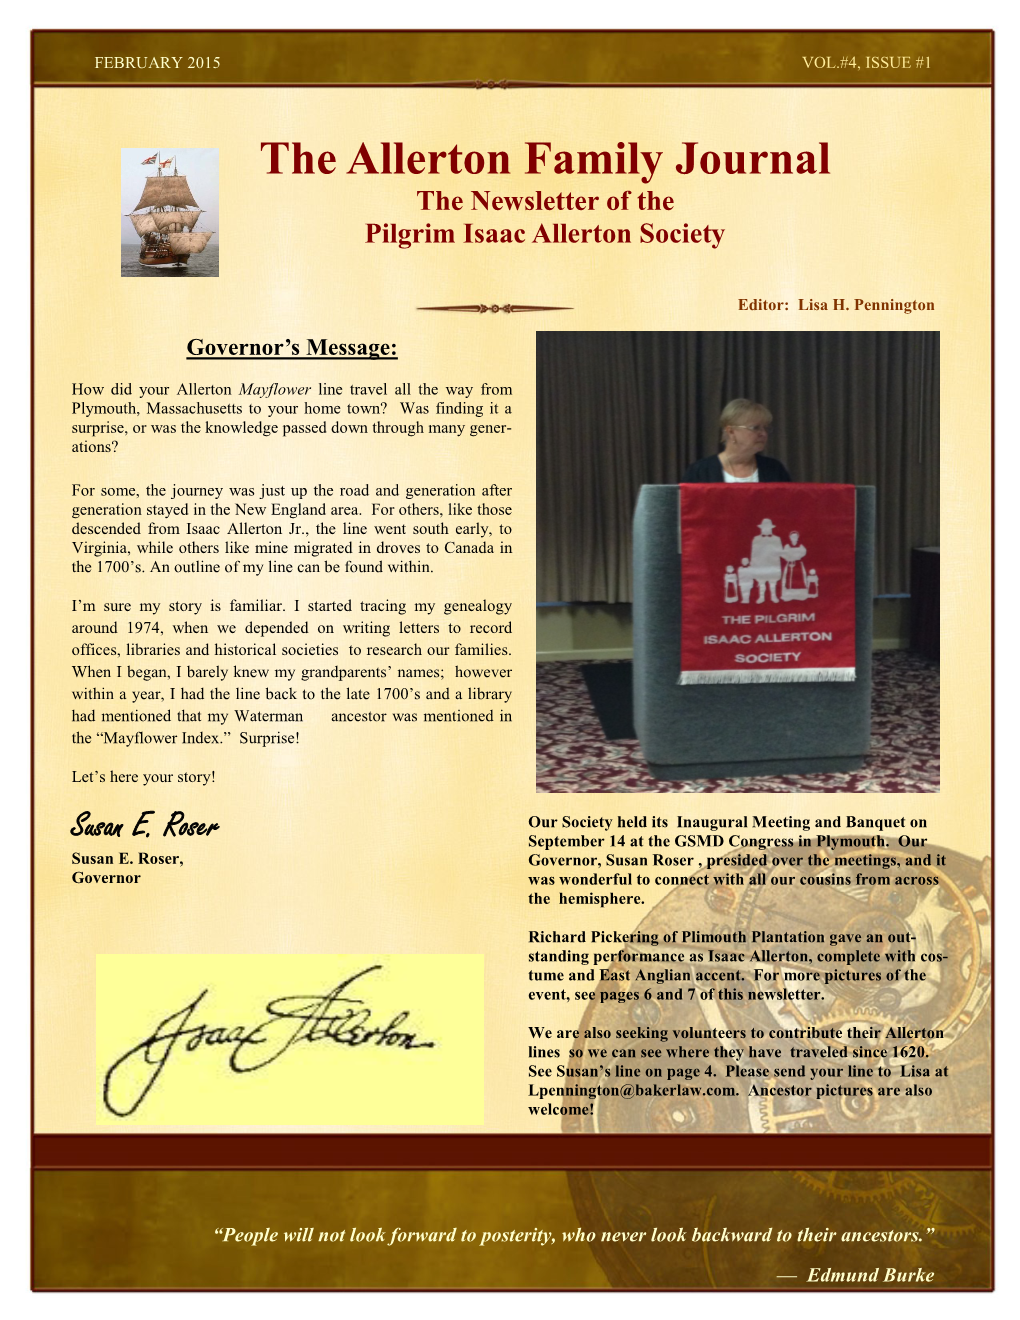 The Allerton Family Journal the Newsletter of the Pilgrim Isaac Allerton Society